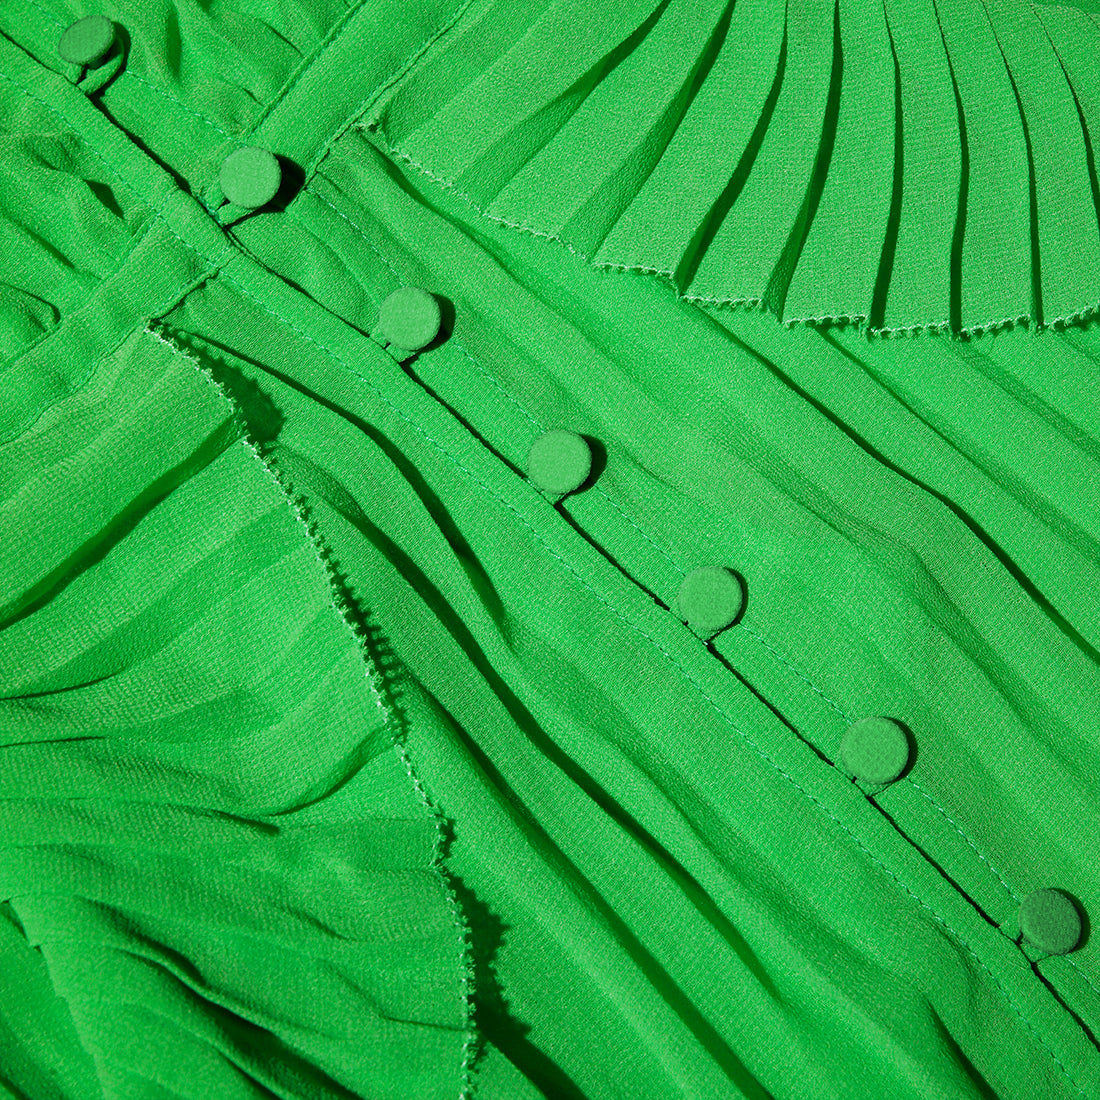 Green Chiffon Ruffle Midi Dress